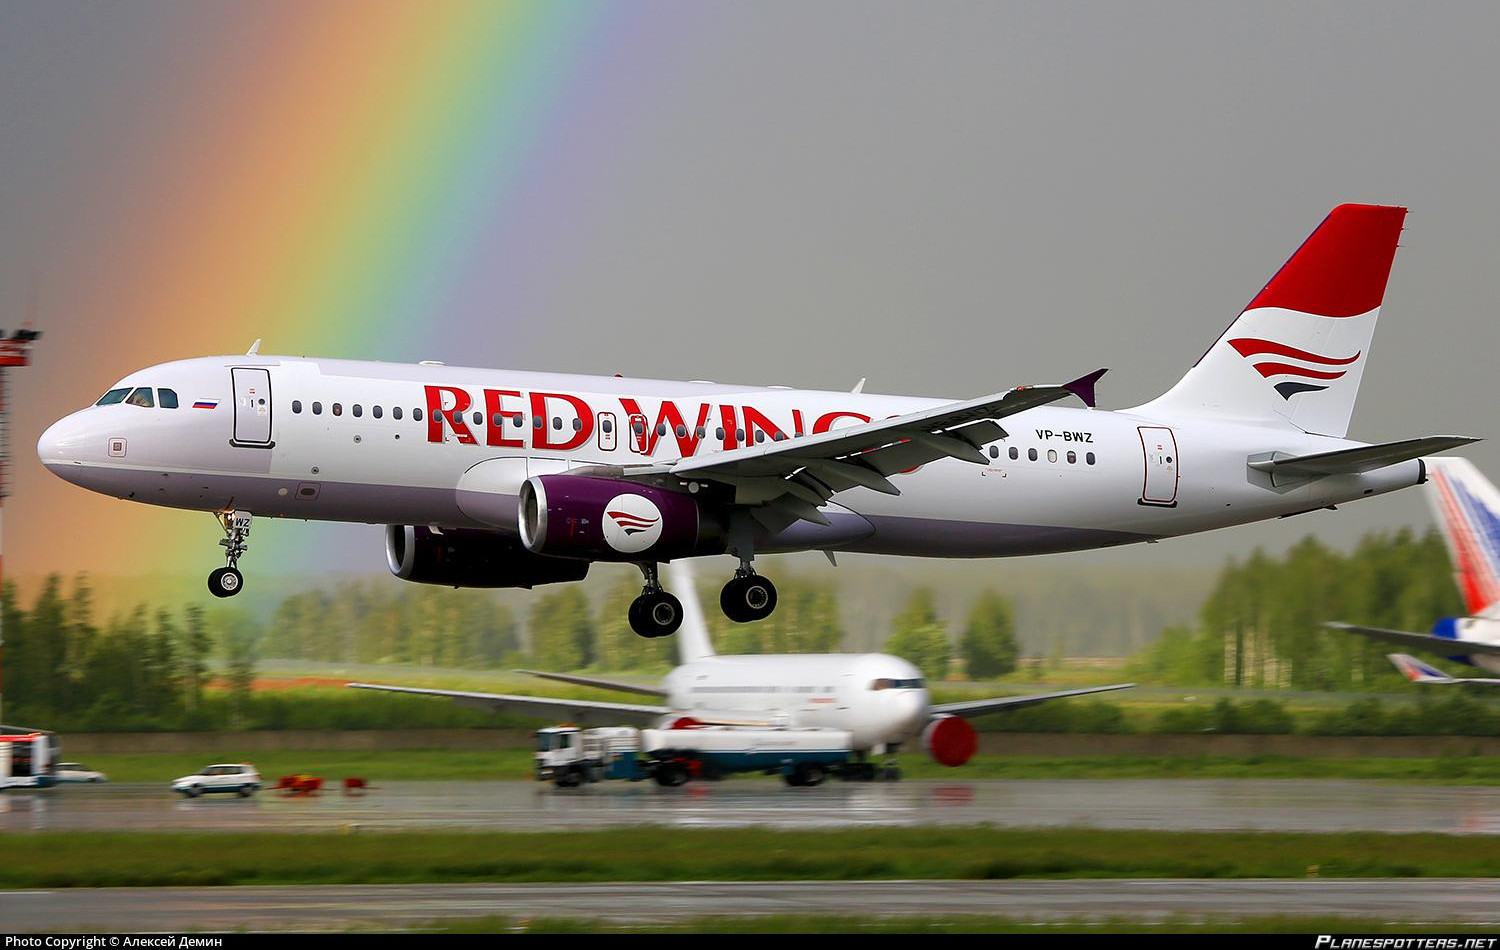 MOSKVA JE JOŠ BLIŽE! Ruska avio-kompanija Red vings od juna leti za Beograd! 